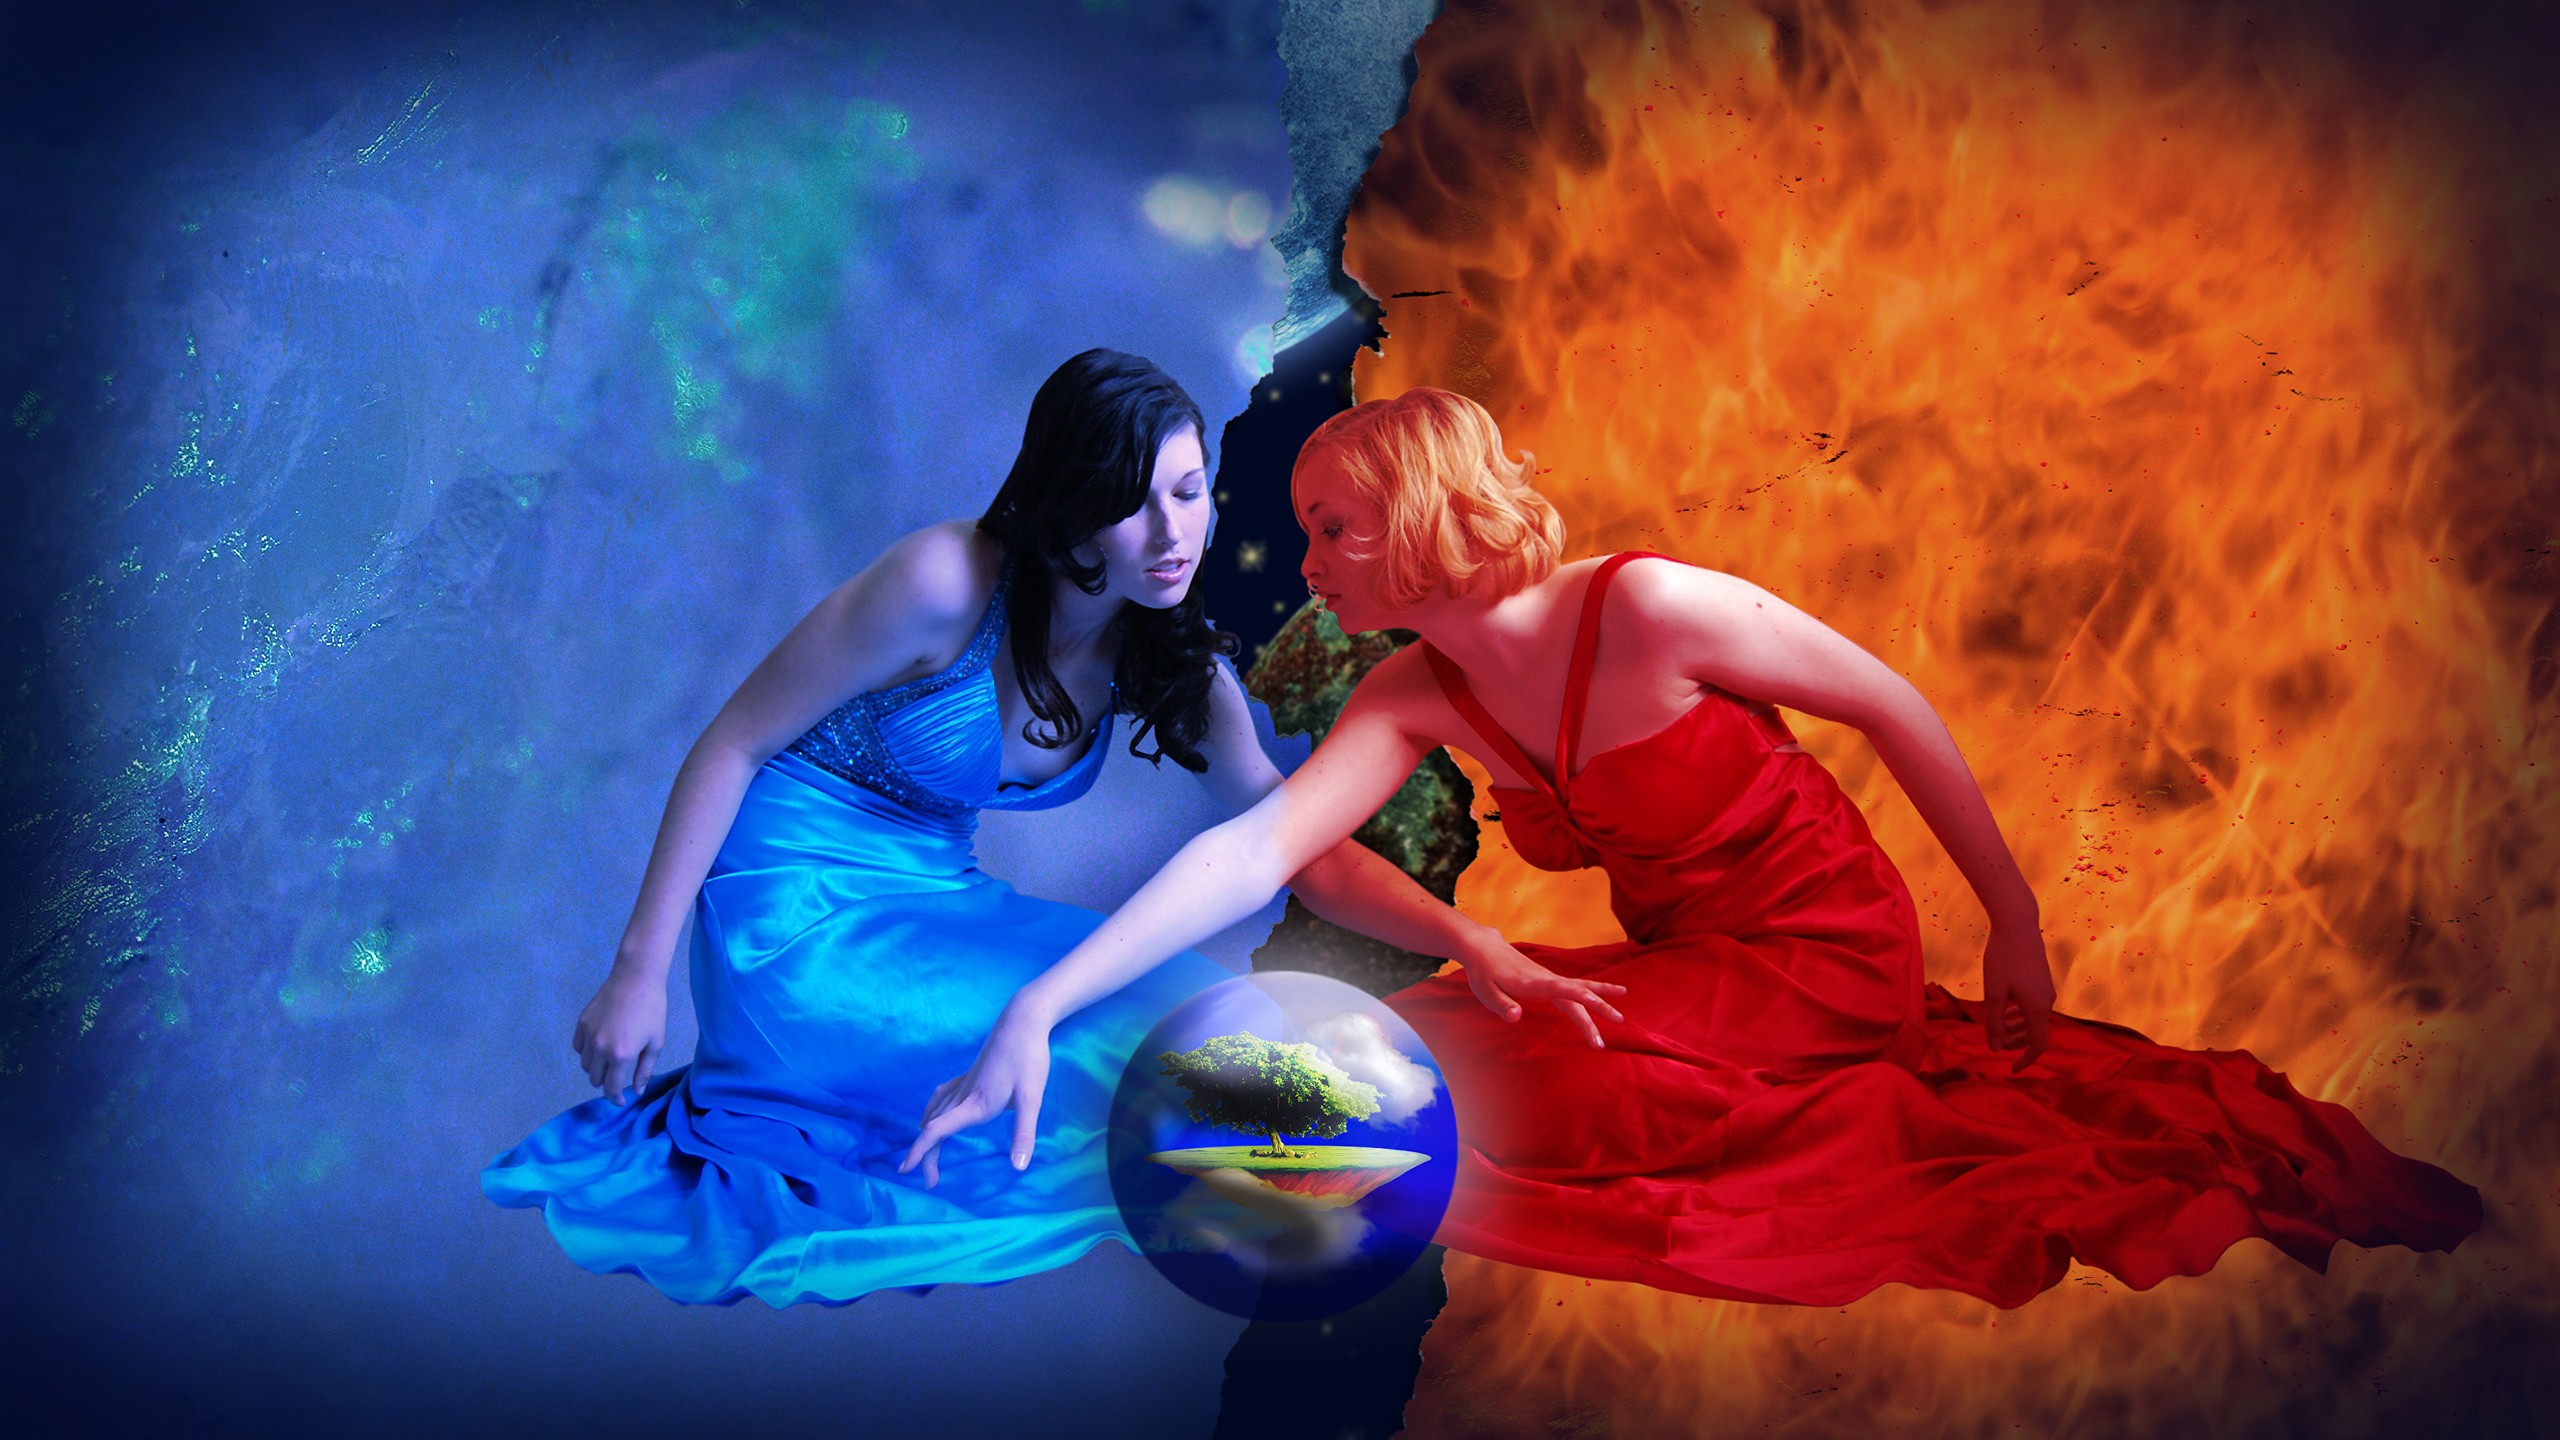 Women Witch Water Fire Elements Sphere World Digital Art 2560x1440